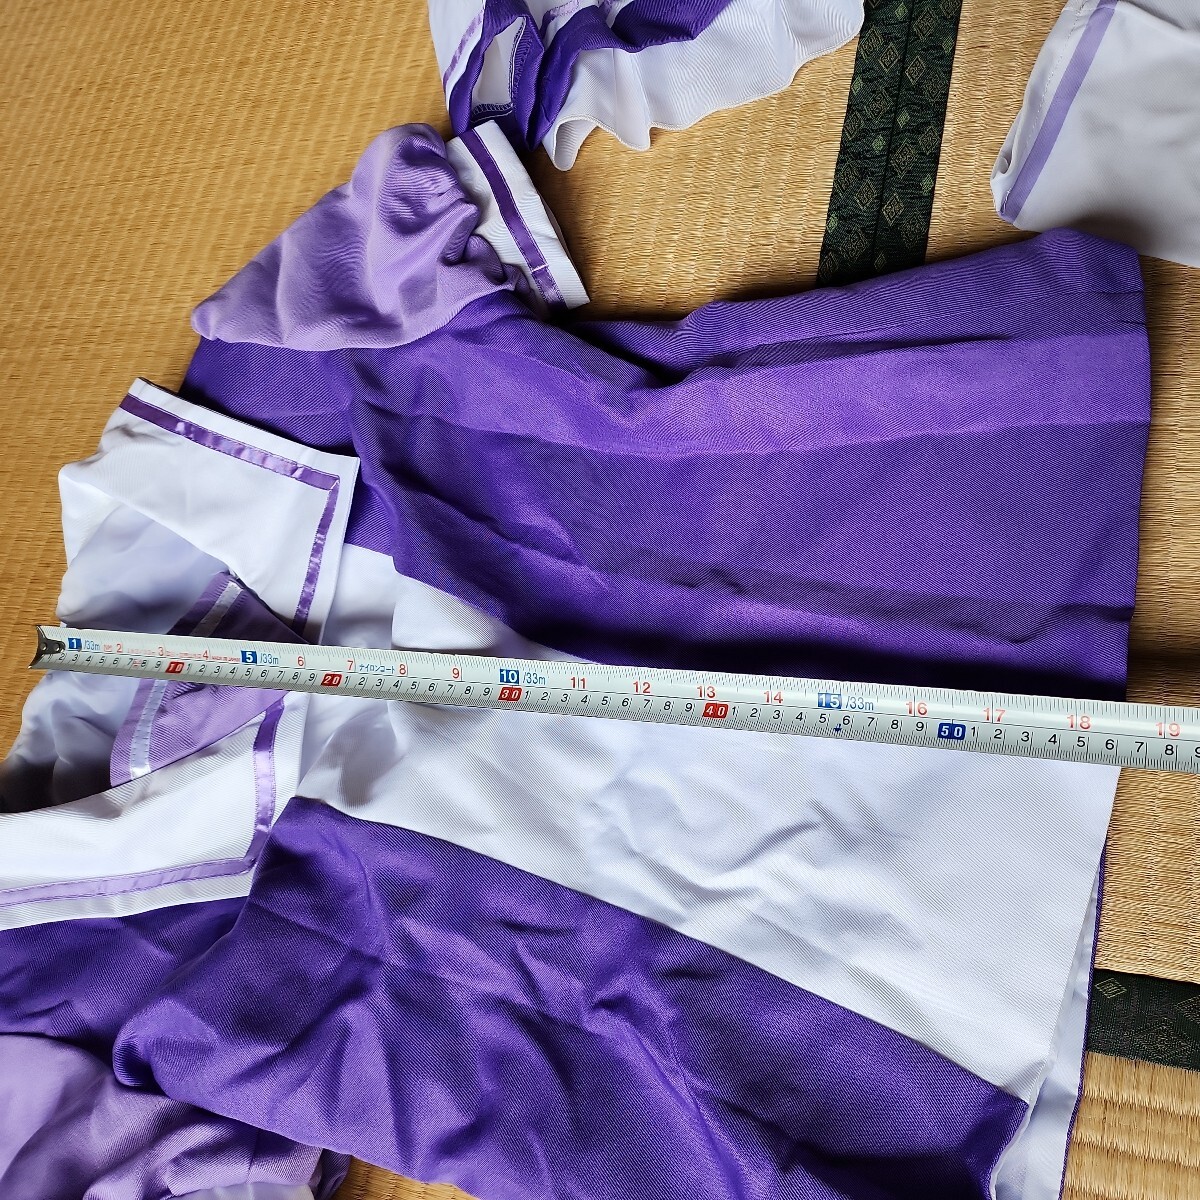  лошадь .pliti Dubey XL размер один иен старт костюмированная игра .. фиолетовый лента. гладкий . ткань, гольфы. мягкий ткань. 